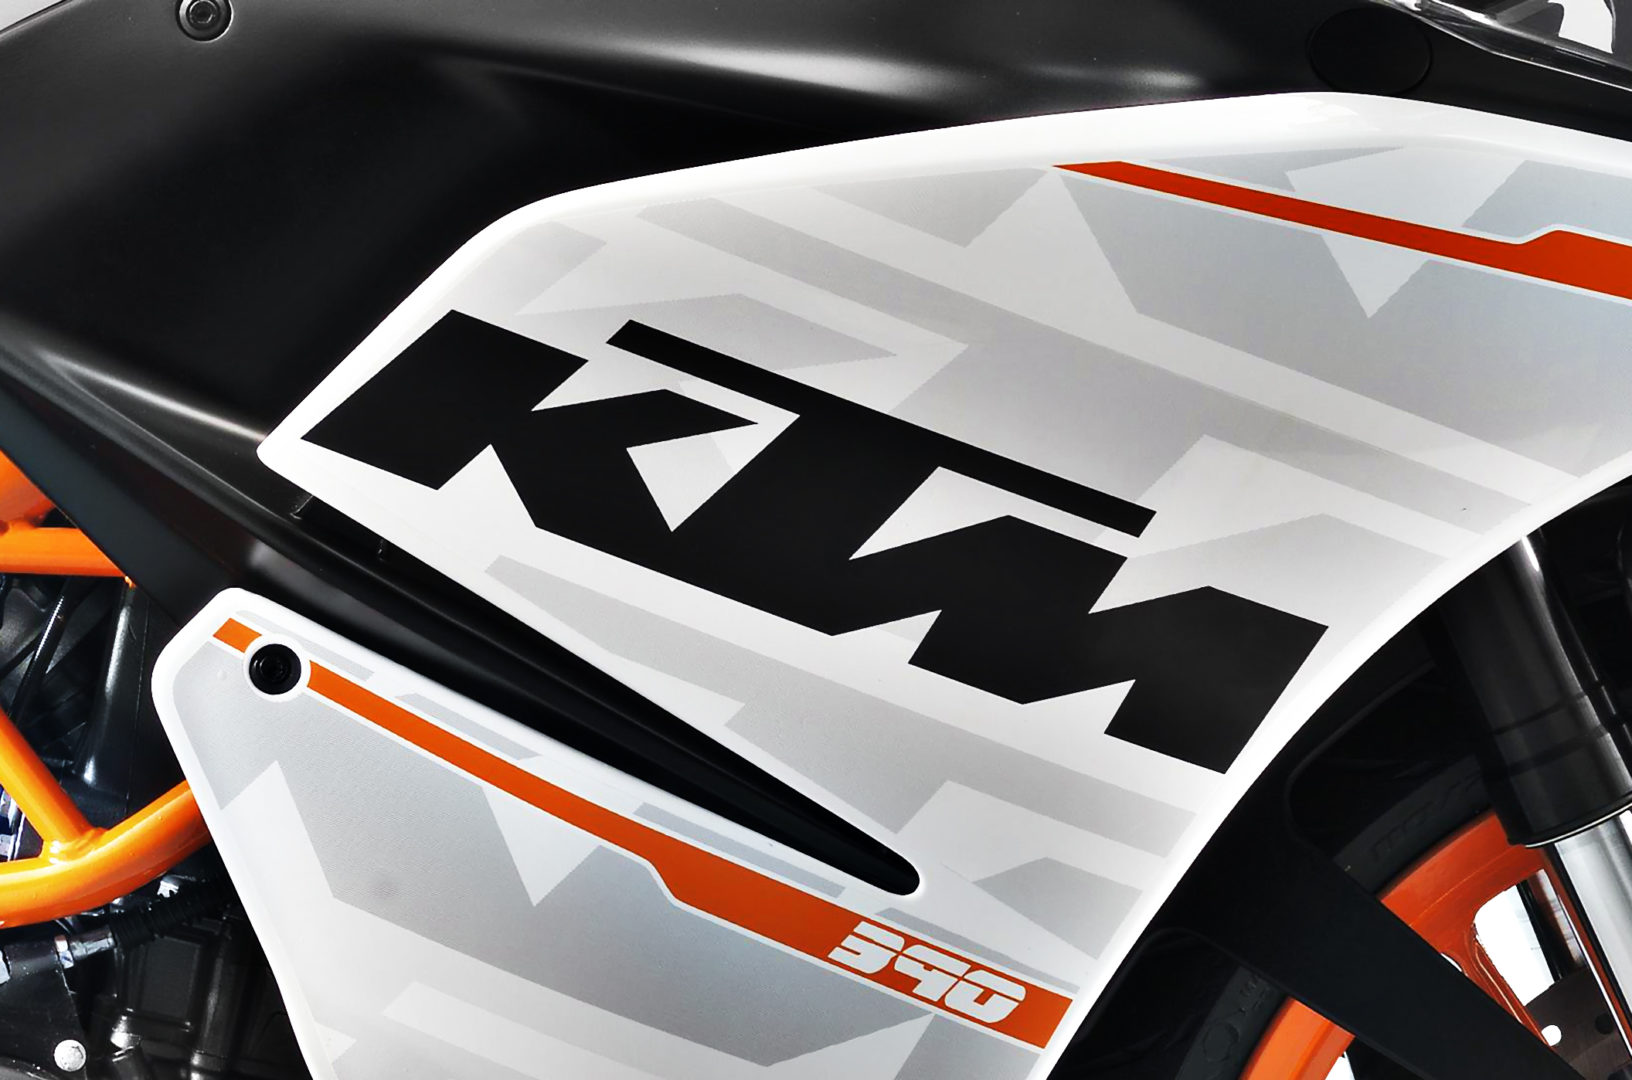 KTM emblem